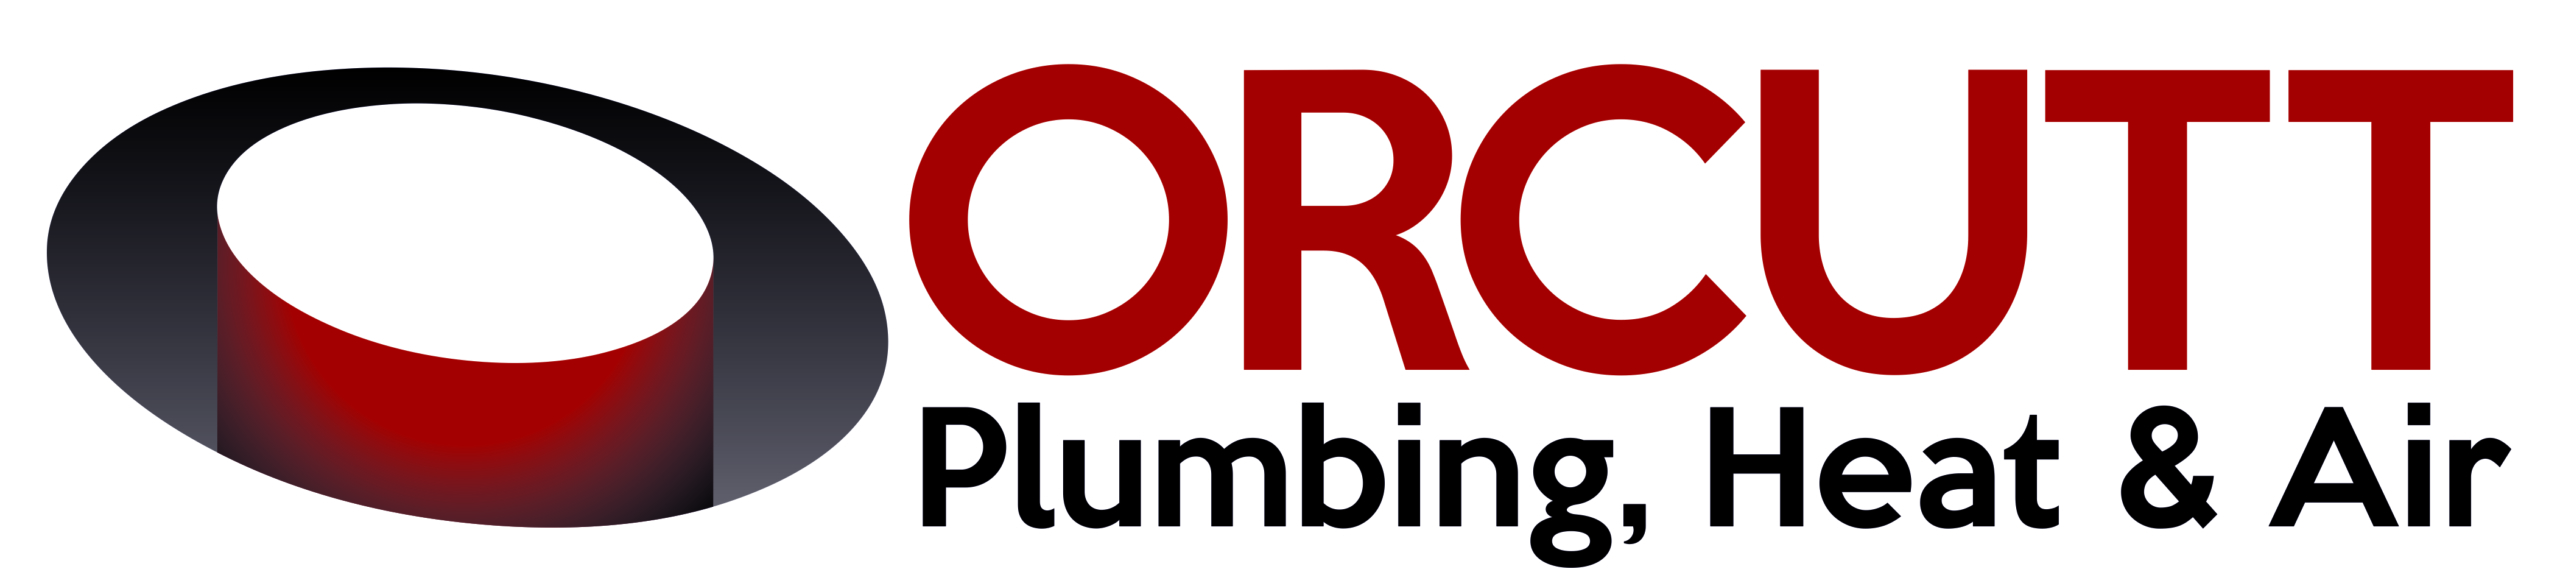 Orcutt Plumbing, Heat & Air logo